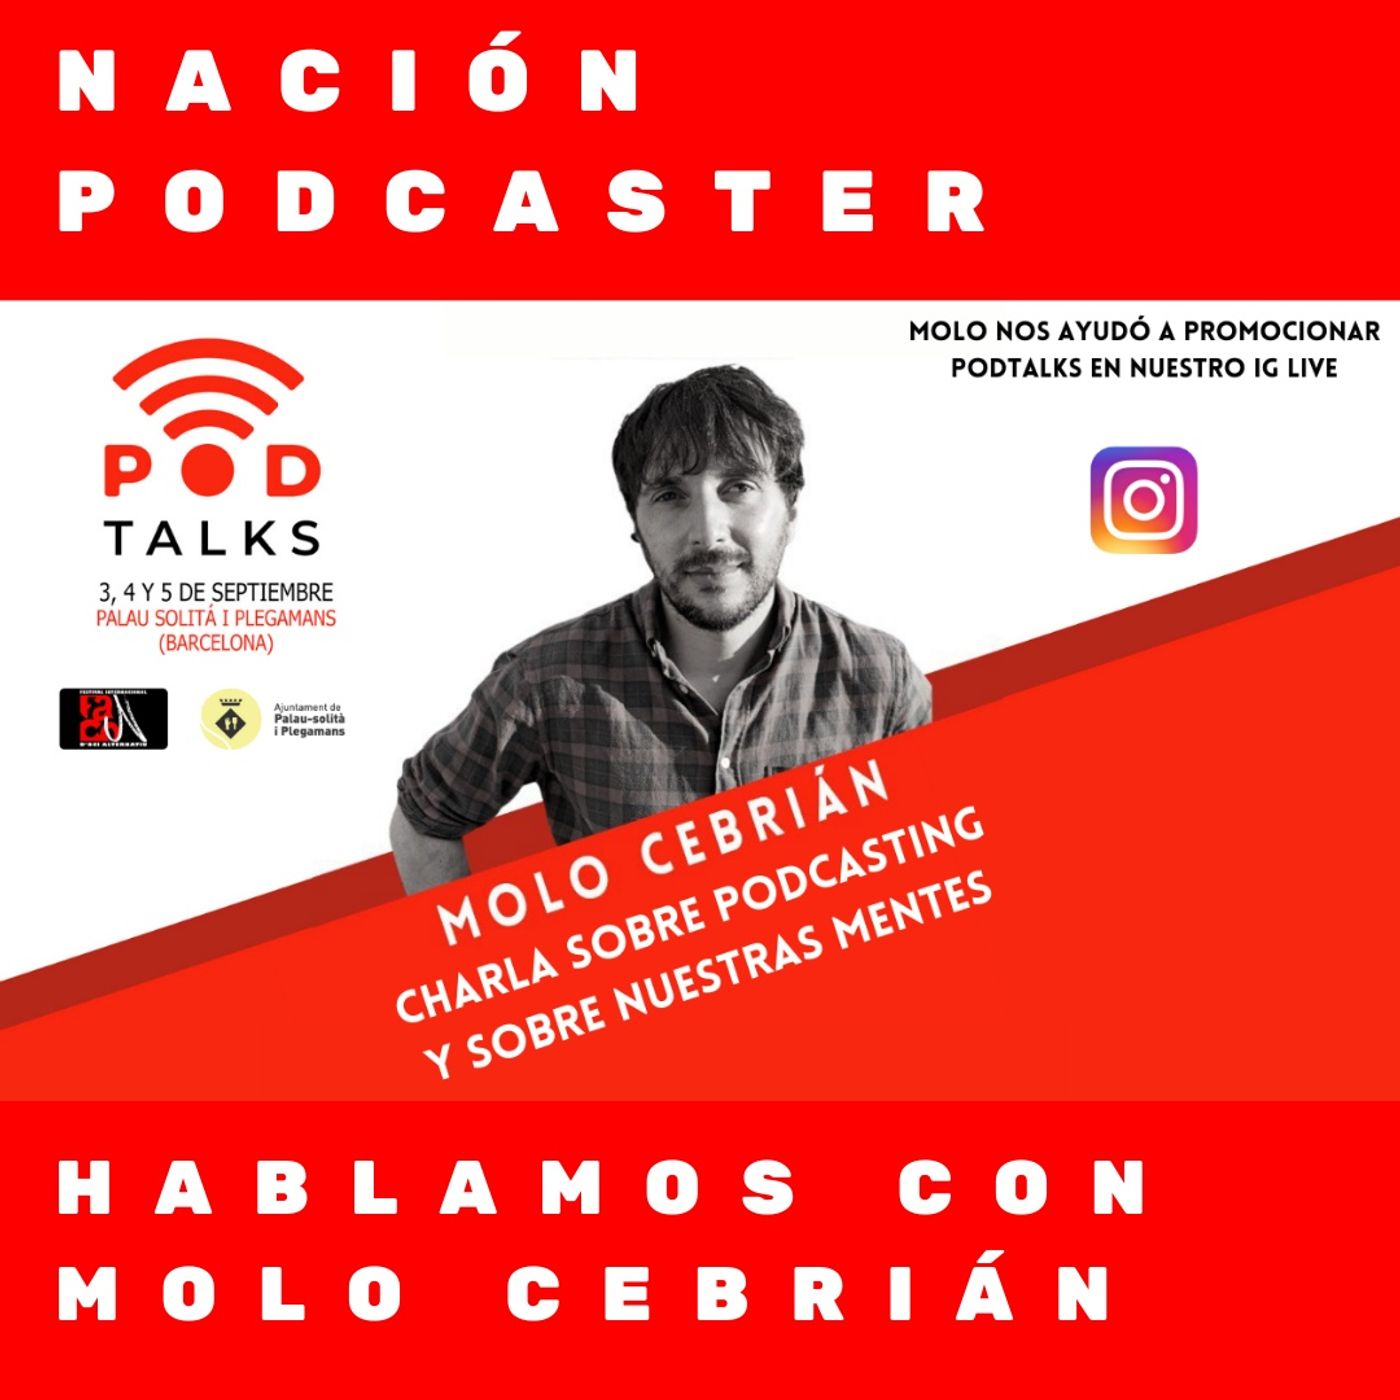 Hablamos con Molo Cebrian sobre podcasting y la mente @molo_cebrian